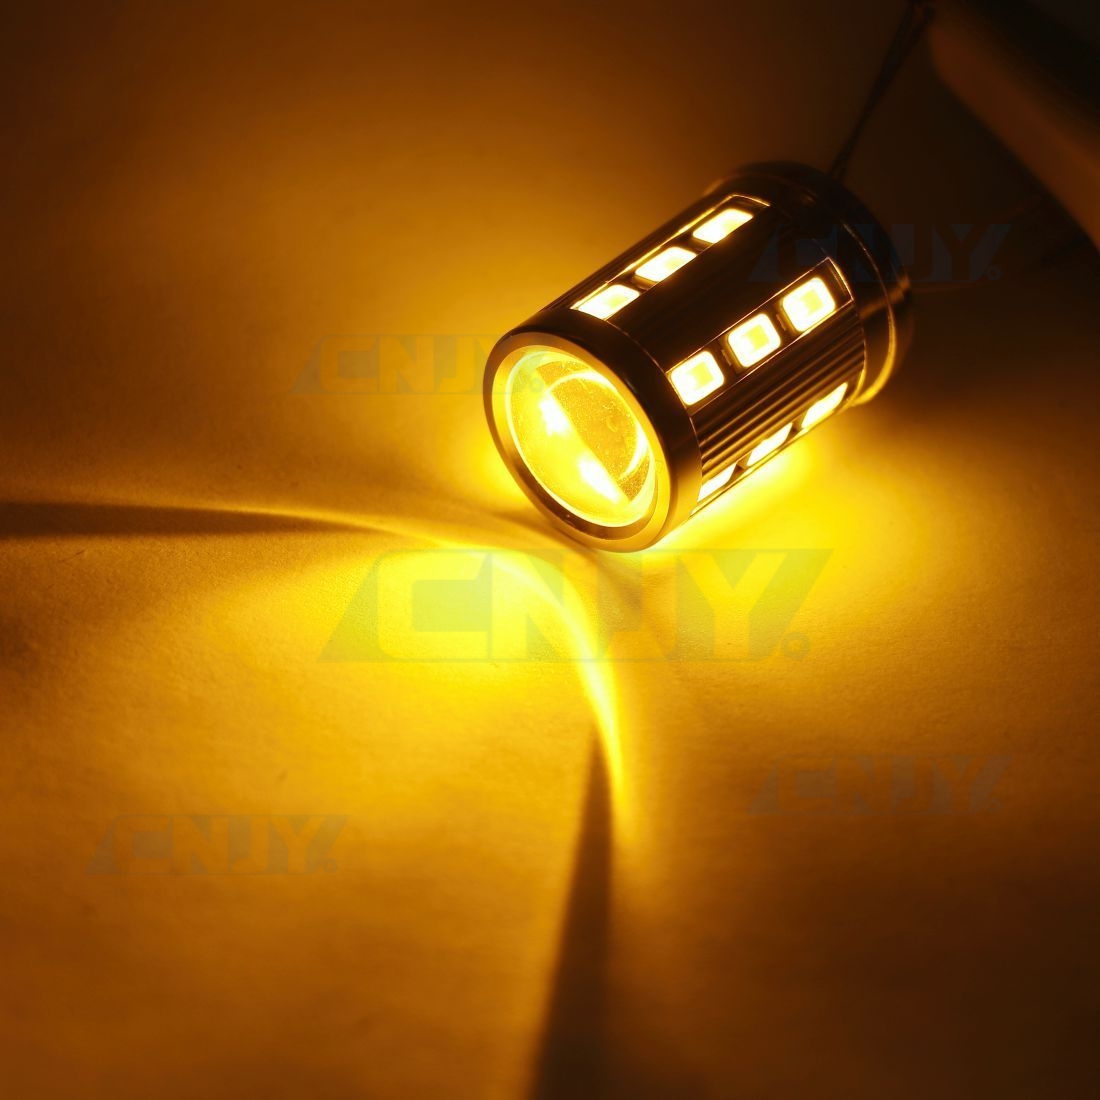 Ampoule LED W21/5W / 6 LEDS HAUTE PUISSANCE BLANC / LED T20